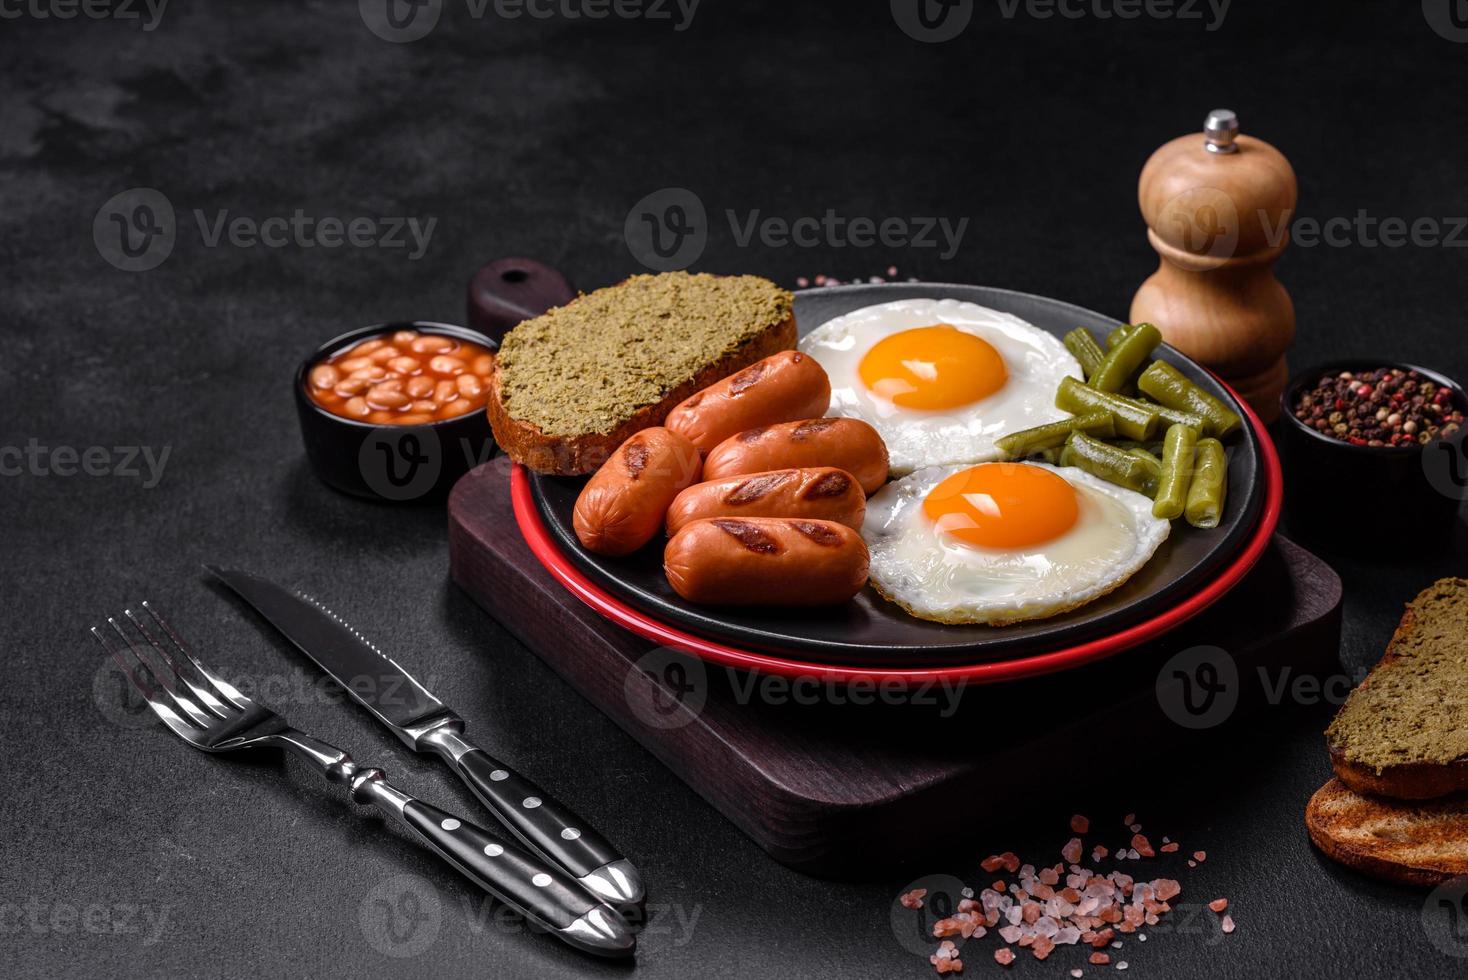 Leckeres englisches Frühstück mit Spiegeleiern, Bohnen, Spargel, Würstchen mit Gewürzen und Kräutern foto